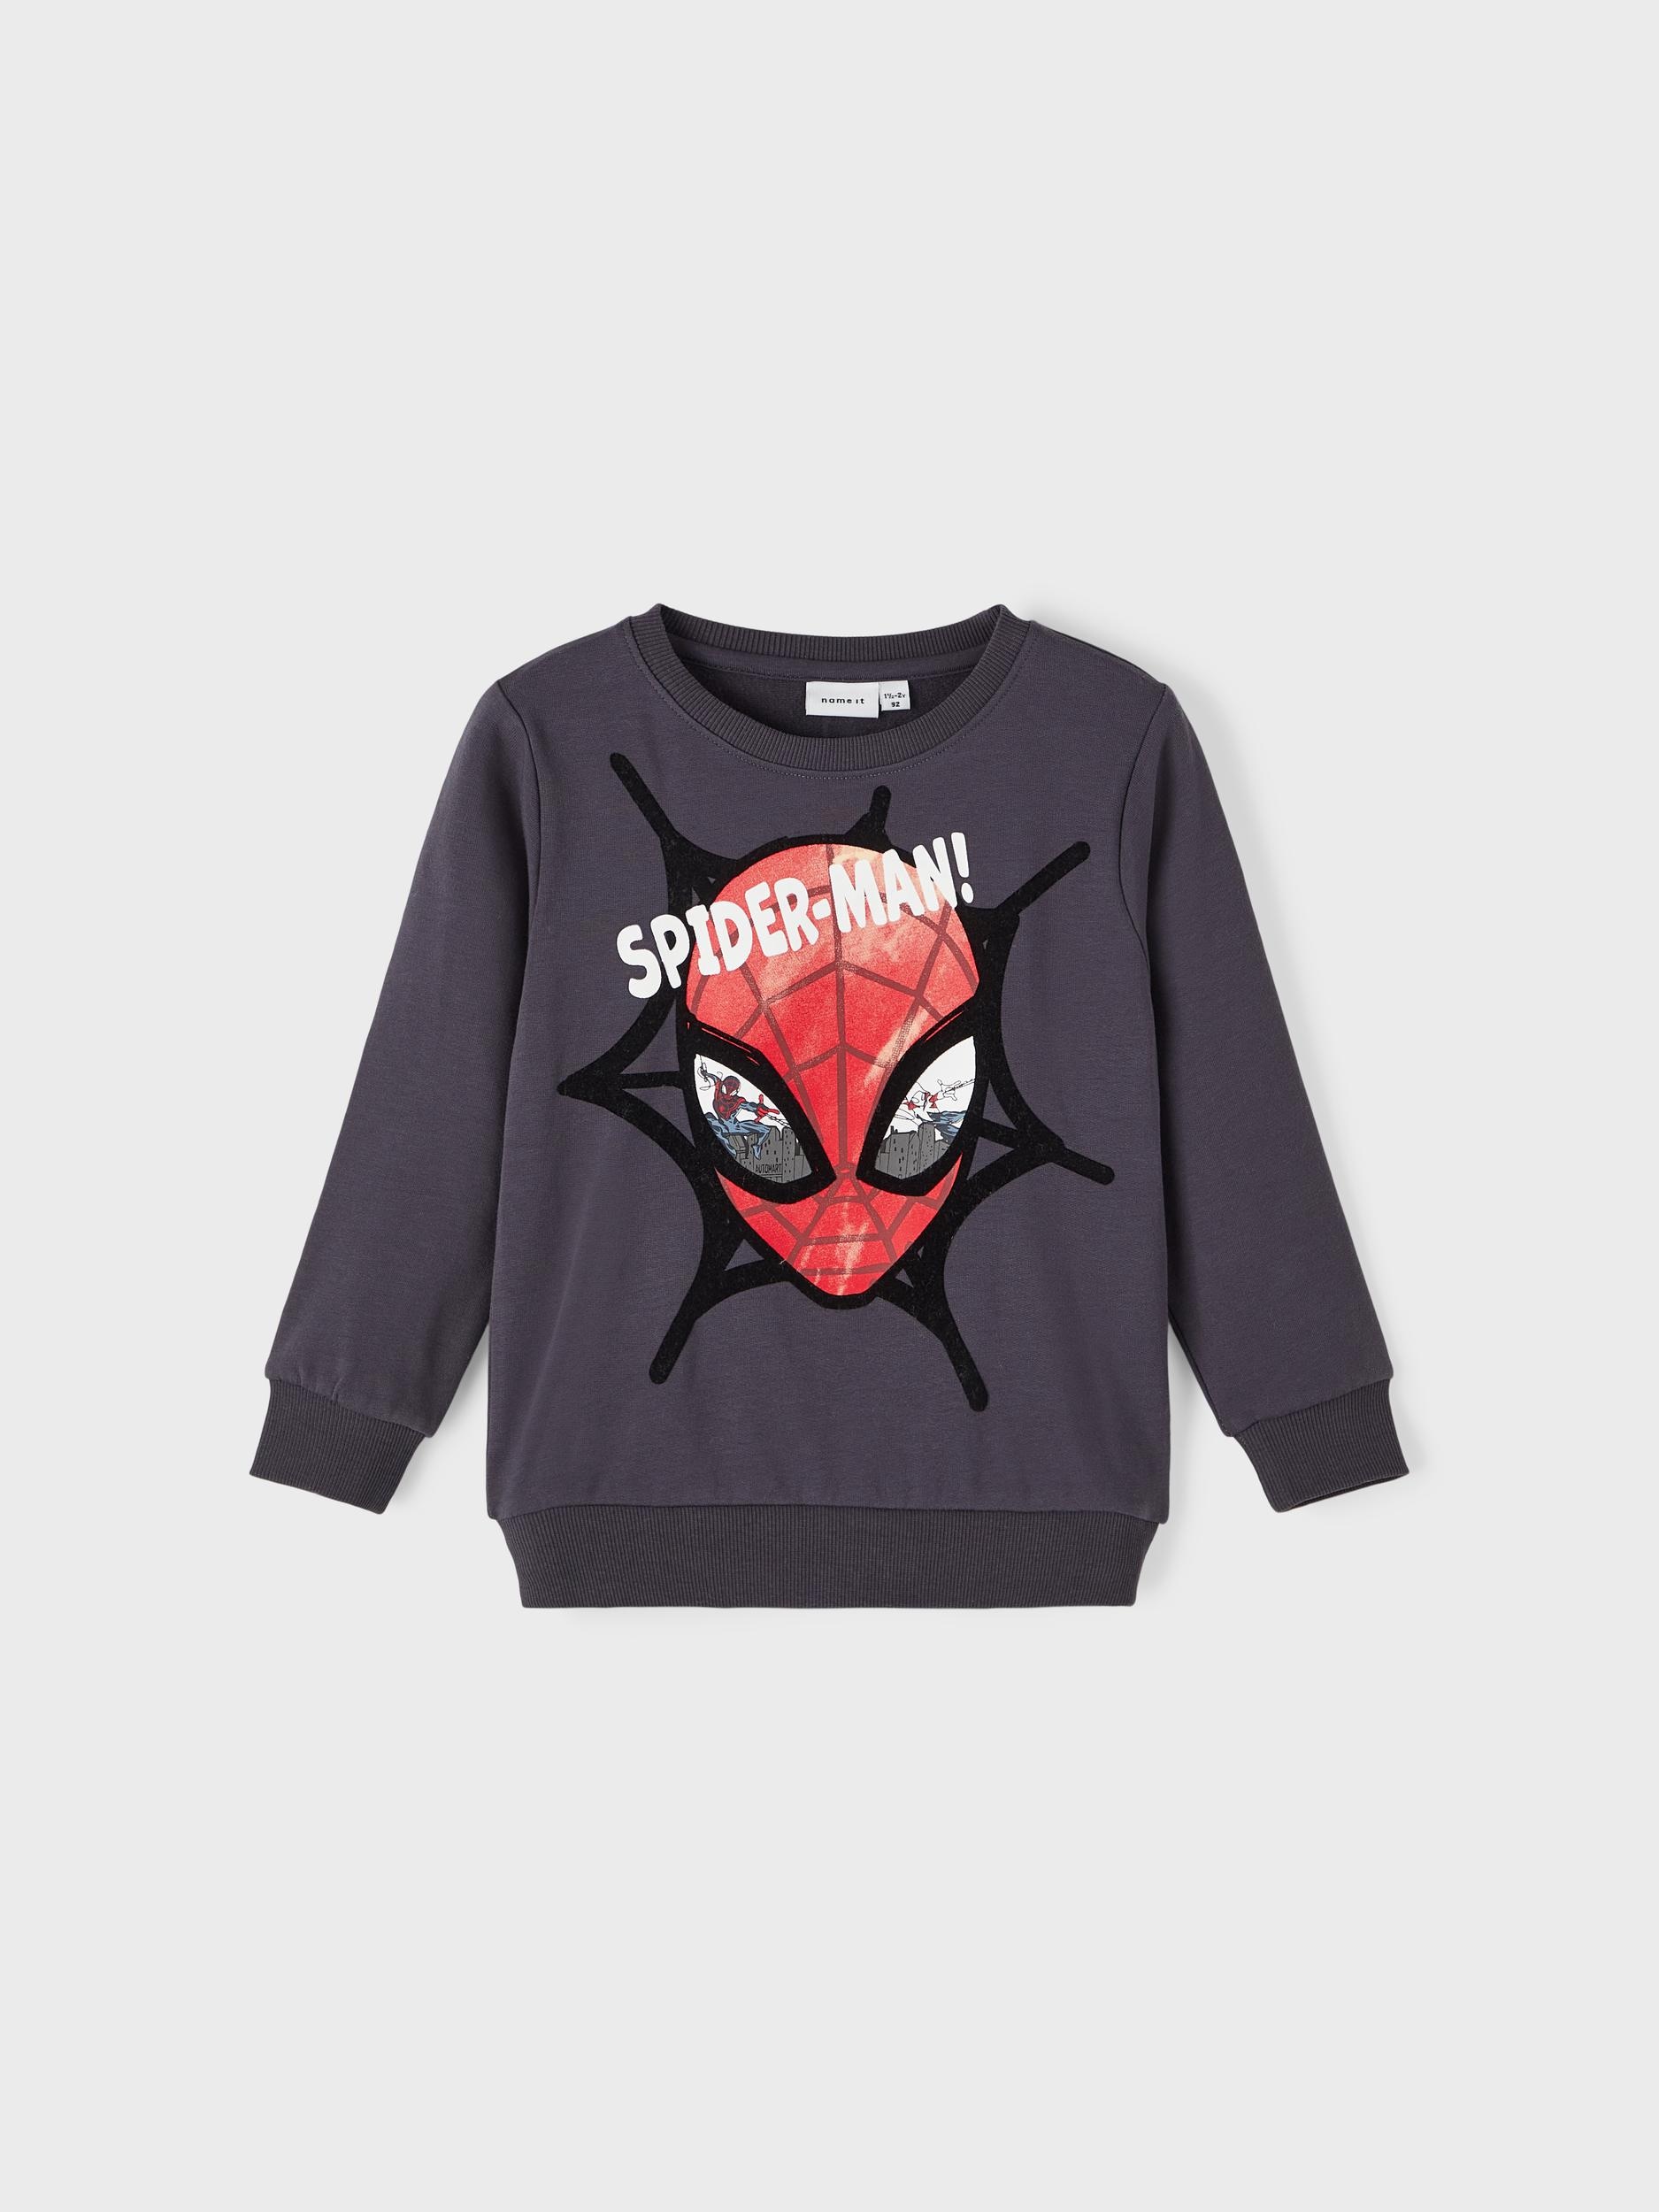 Black Friday Name It SWEAT | Sweatshirt MAR« BAUR BRU »NMMSVENDE SPIDERMAN